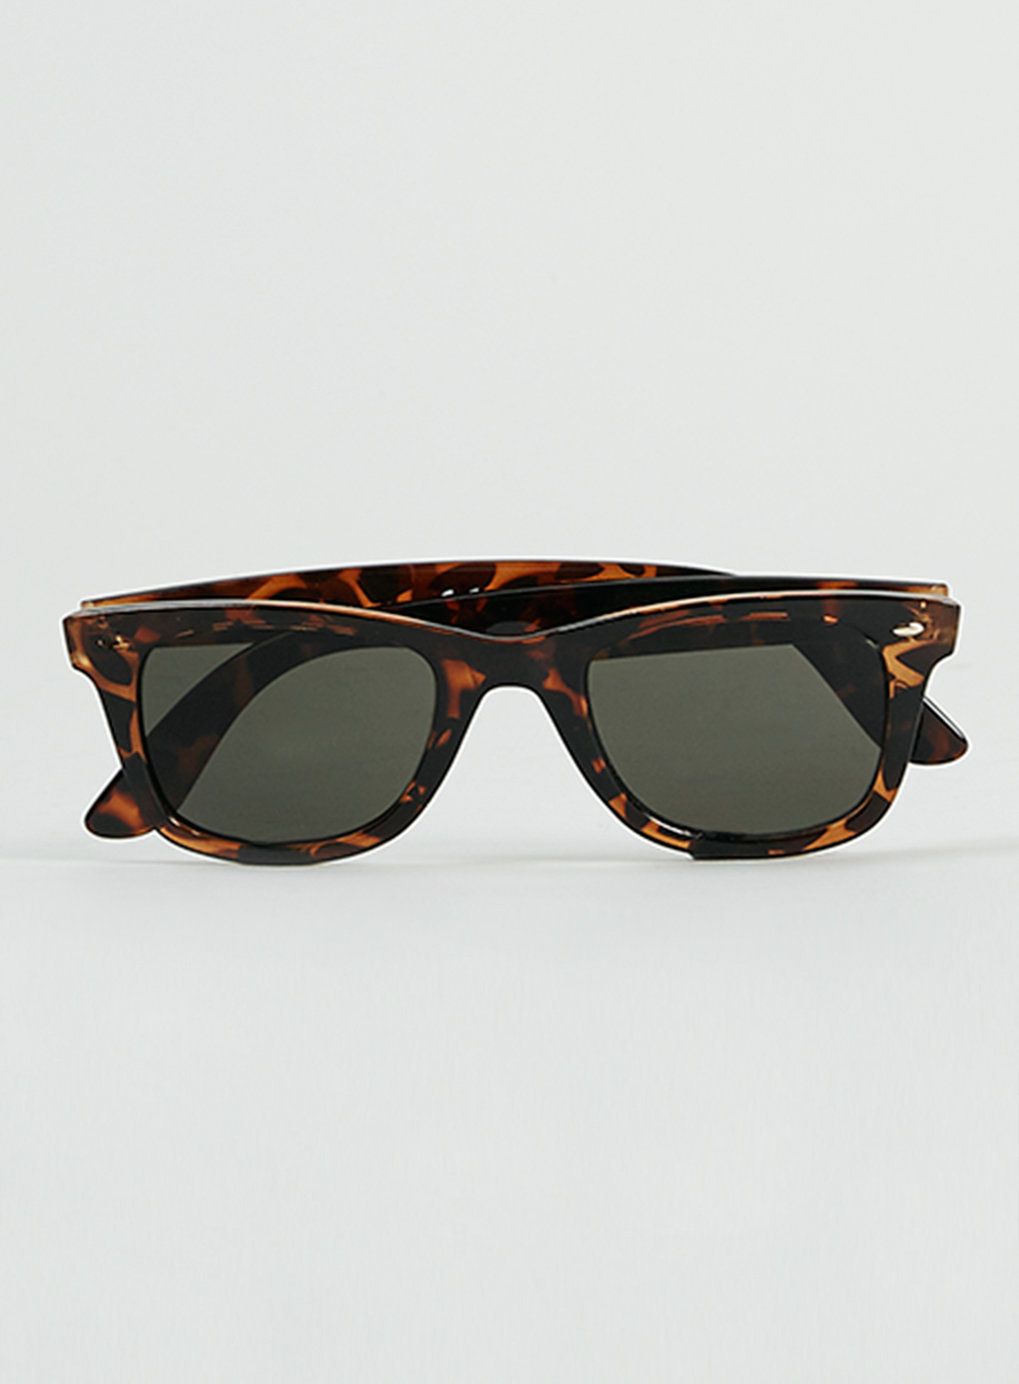 Topman Tortoise Shell Sunglasses In Brown For Men Lyst